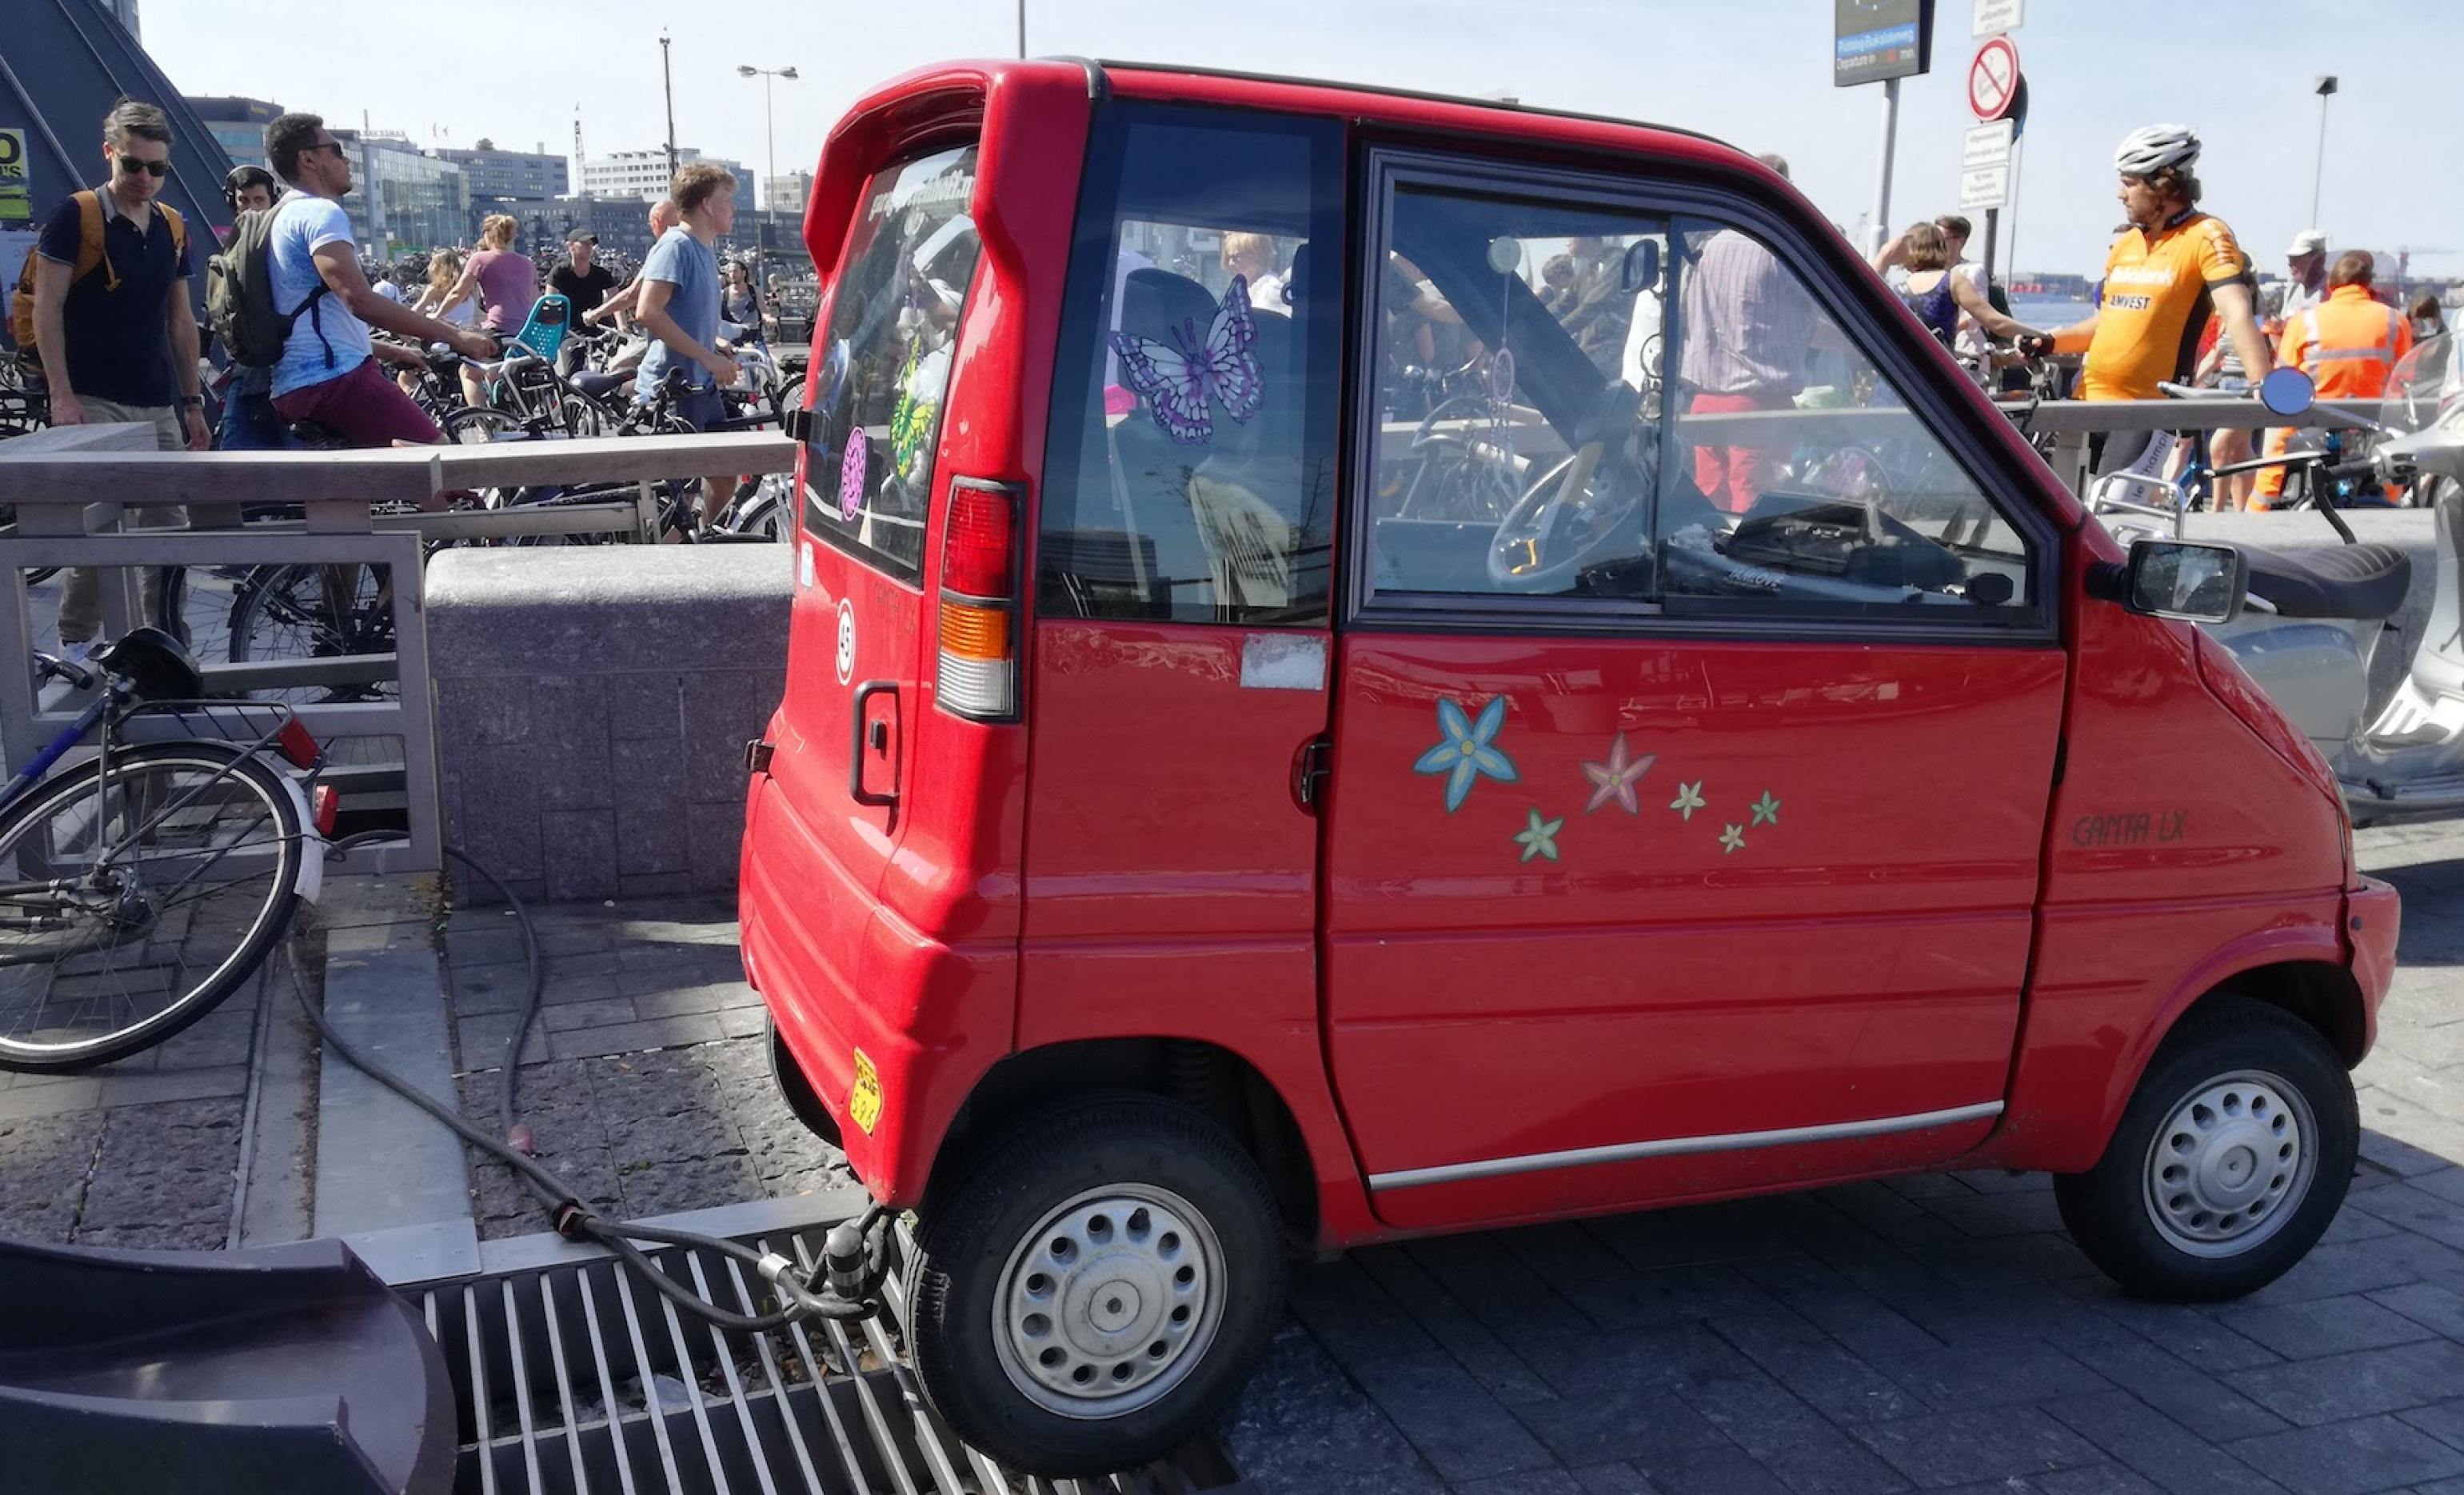 Ein kleines rotes E-Auto steht an einer Ladestation. Im Hintergrund sind Menschen zu sehen.